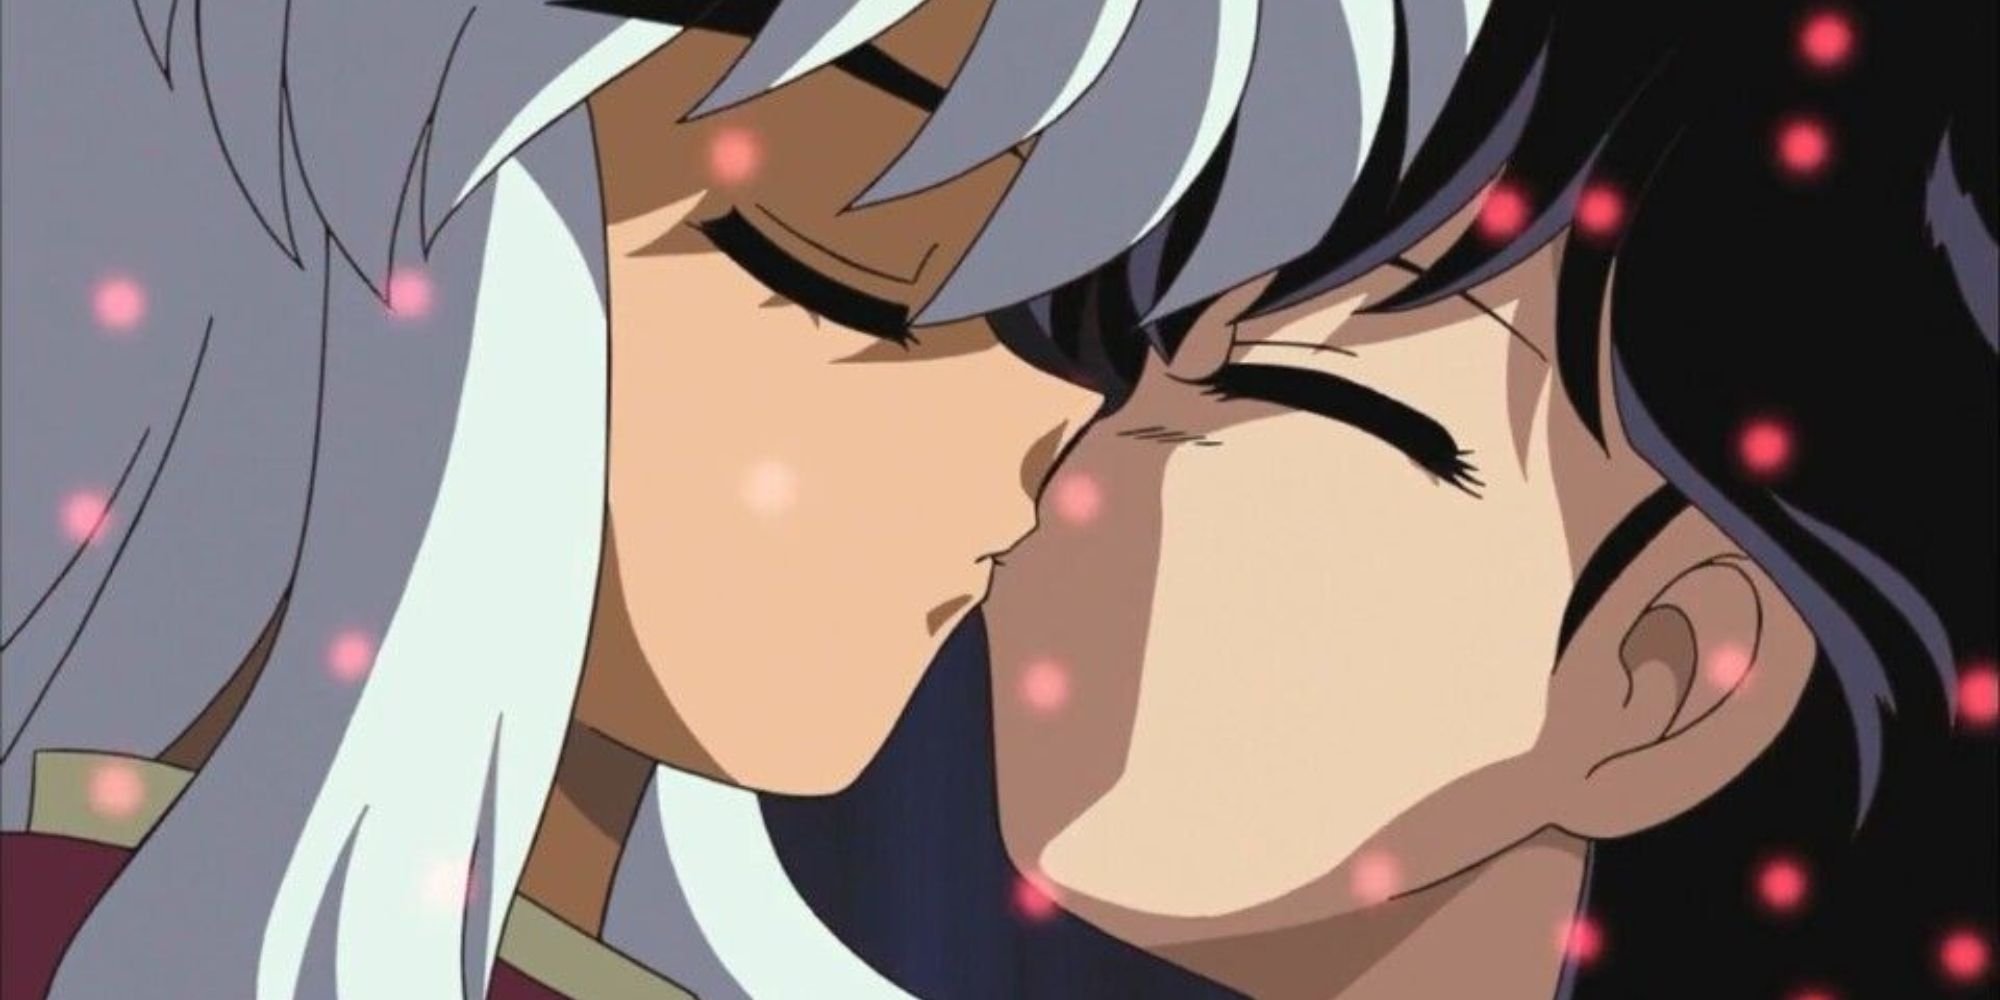 Kagome & Inuyasha kiss in Inuyasha